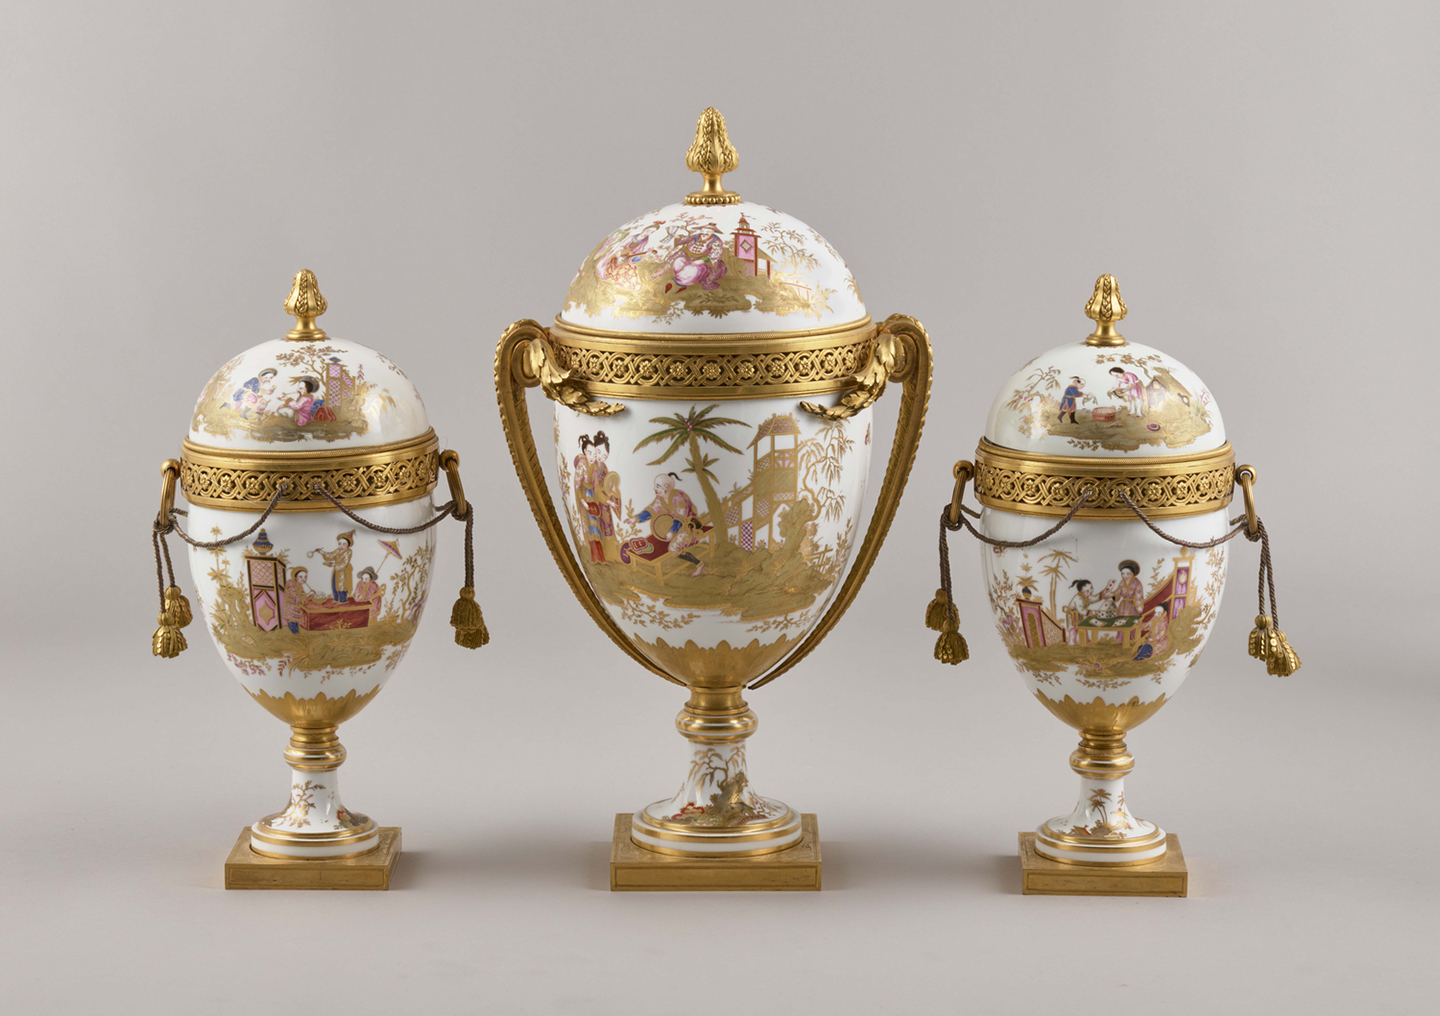 Bộ Ba Chiếc Bình Có Nắp, do Xưởng Gốm sứ Sèvres chế tác năm 1775-1776. Sứ cứng với khung bằng đồng mạ vàng. Bảo tàng Quốc gia của Cung điện Versailles và Trianon. (Ảnh: Đăng dưới sự cho phép của Bảo tàng J.P Getty)